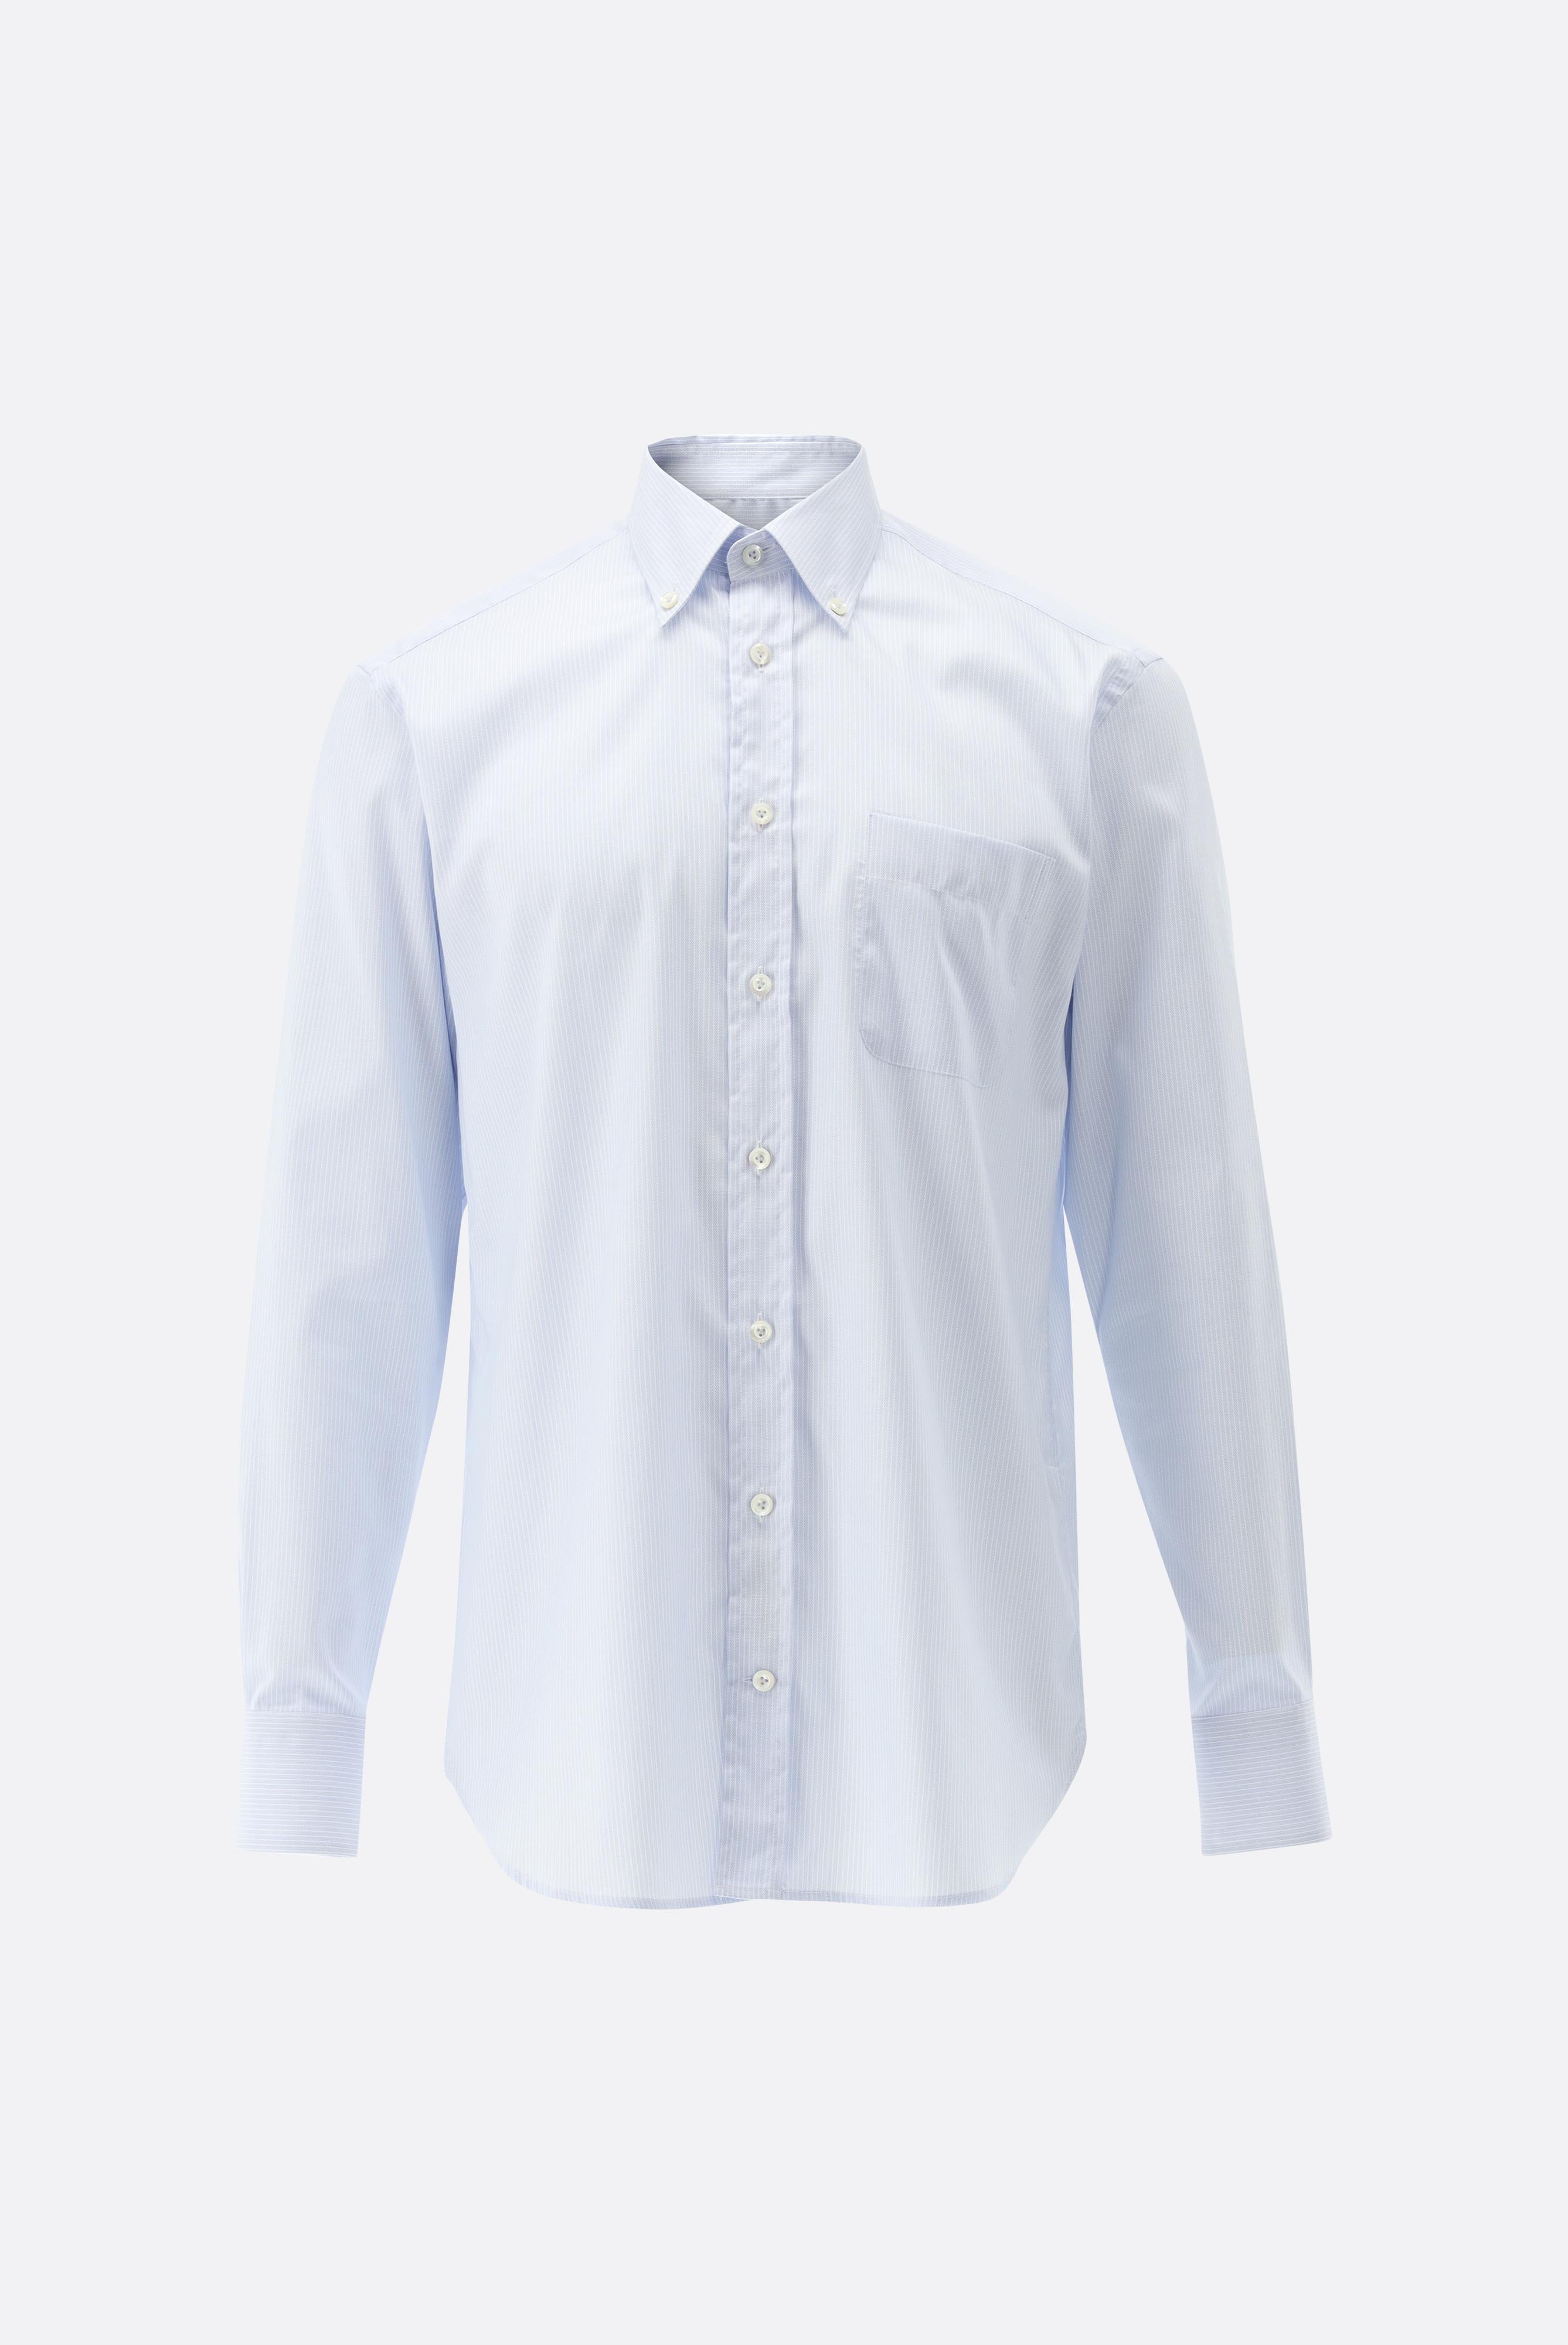 Bügelleichte Hemden+Bügelfreies Hemd mit Streifen Comfort Fit+20.2026.BQ.161109.710.39